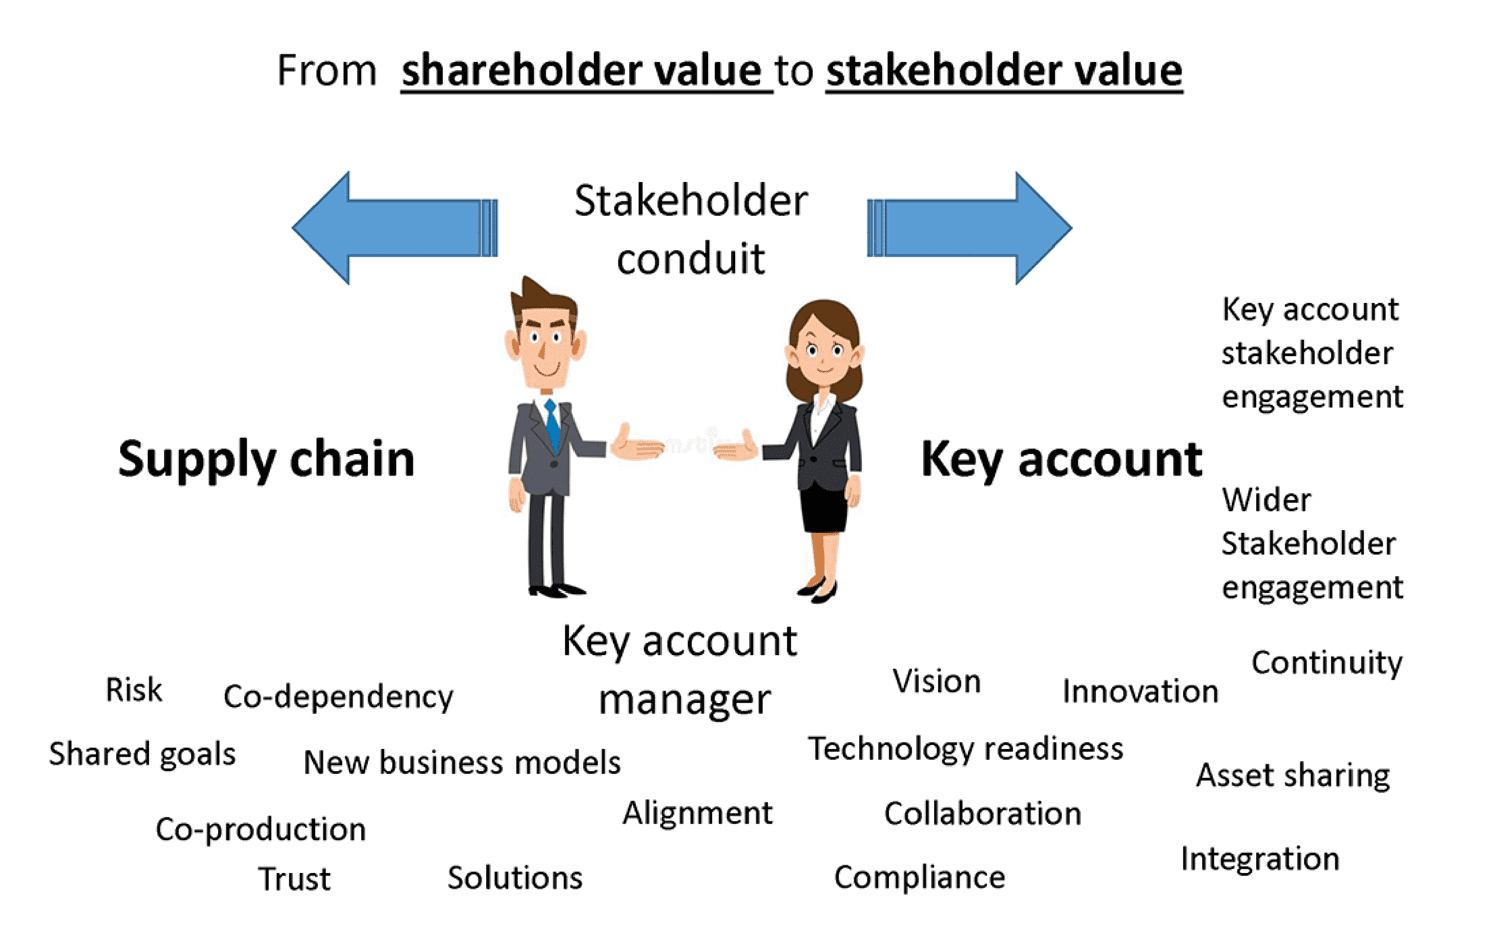 Figure 3: From shareholder value to stakeholder value.